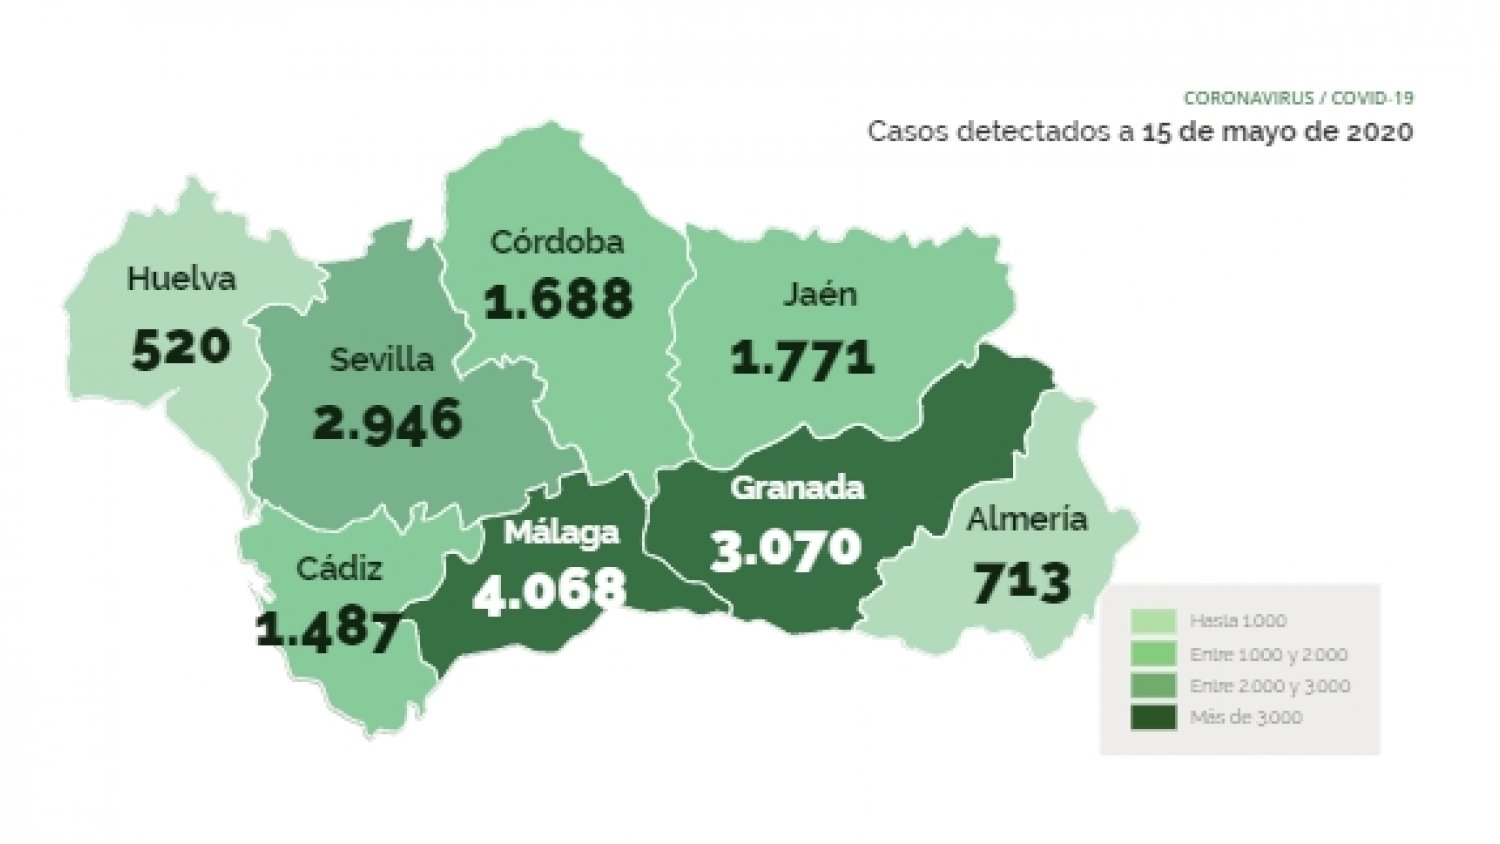 Málaga sufre un repunte con 85 nuevos contagiados y cuatro fallecidos más